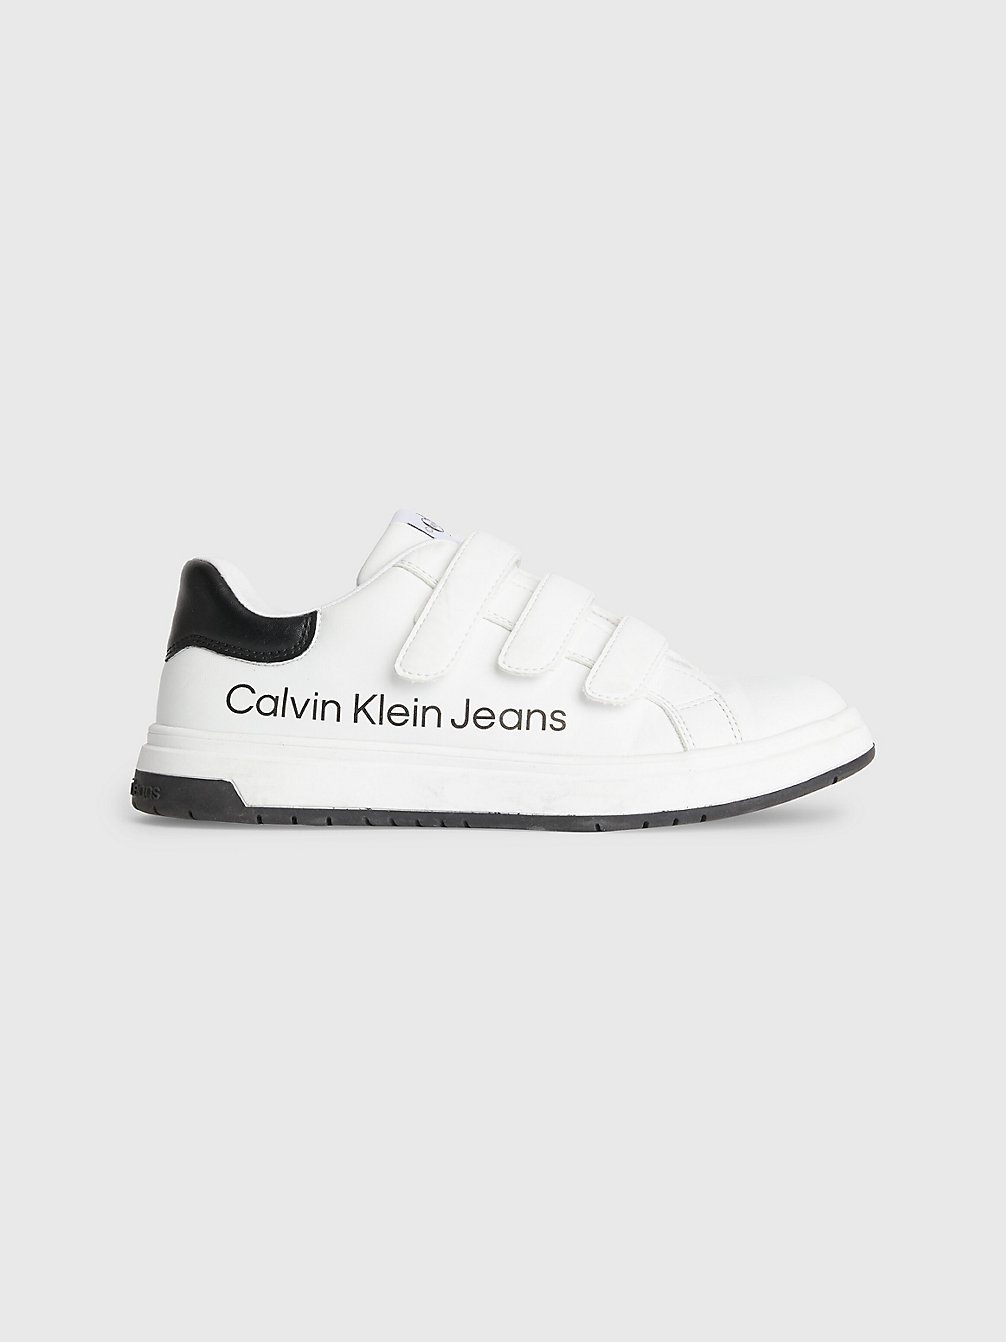 WHITE / BLACK > Детские кроссовки из переработанного материала > undefined kids unisex - Calvin Klein